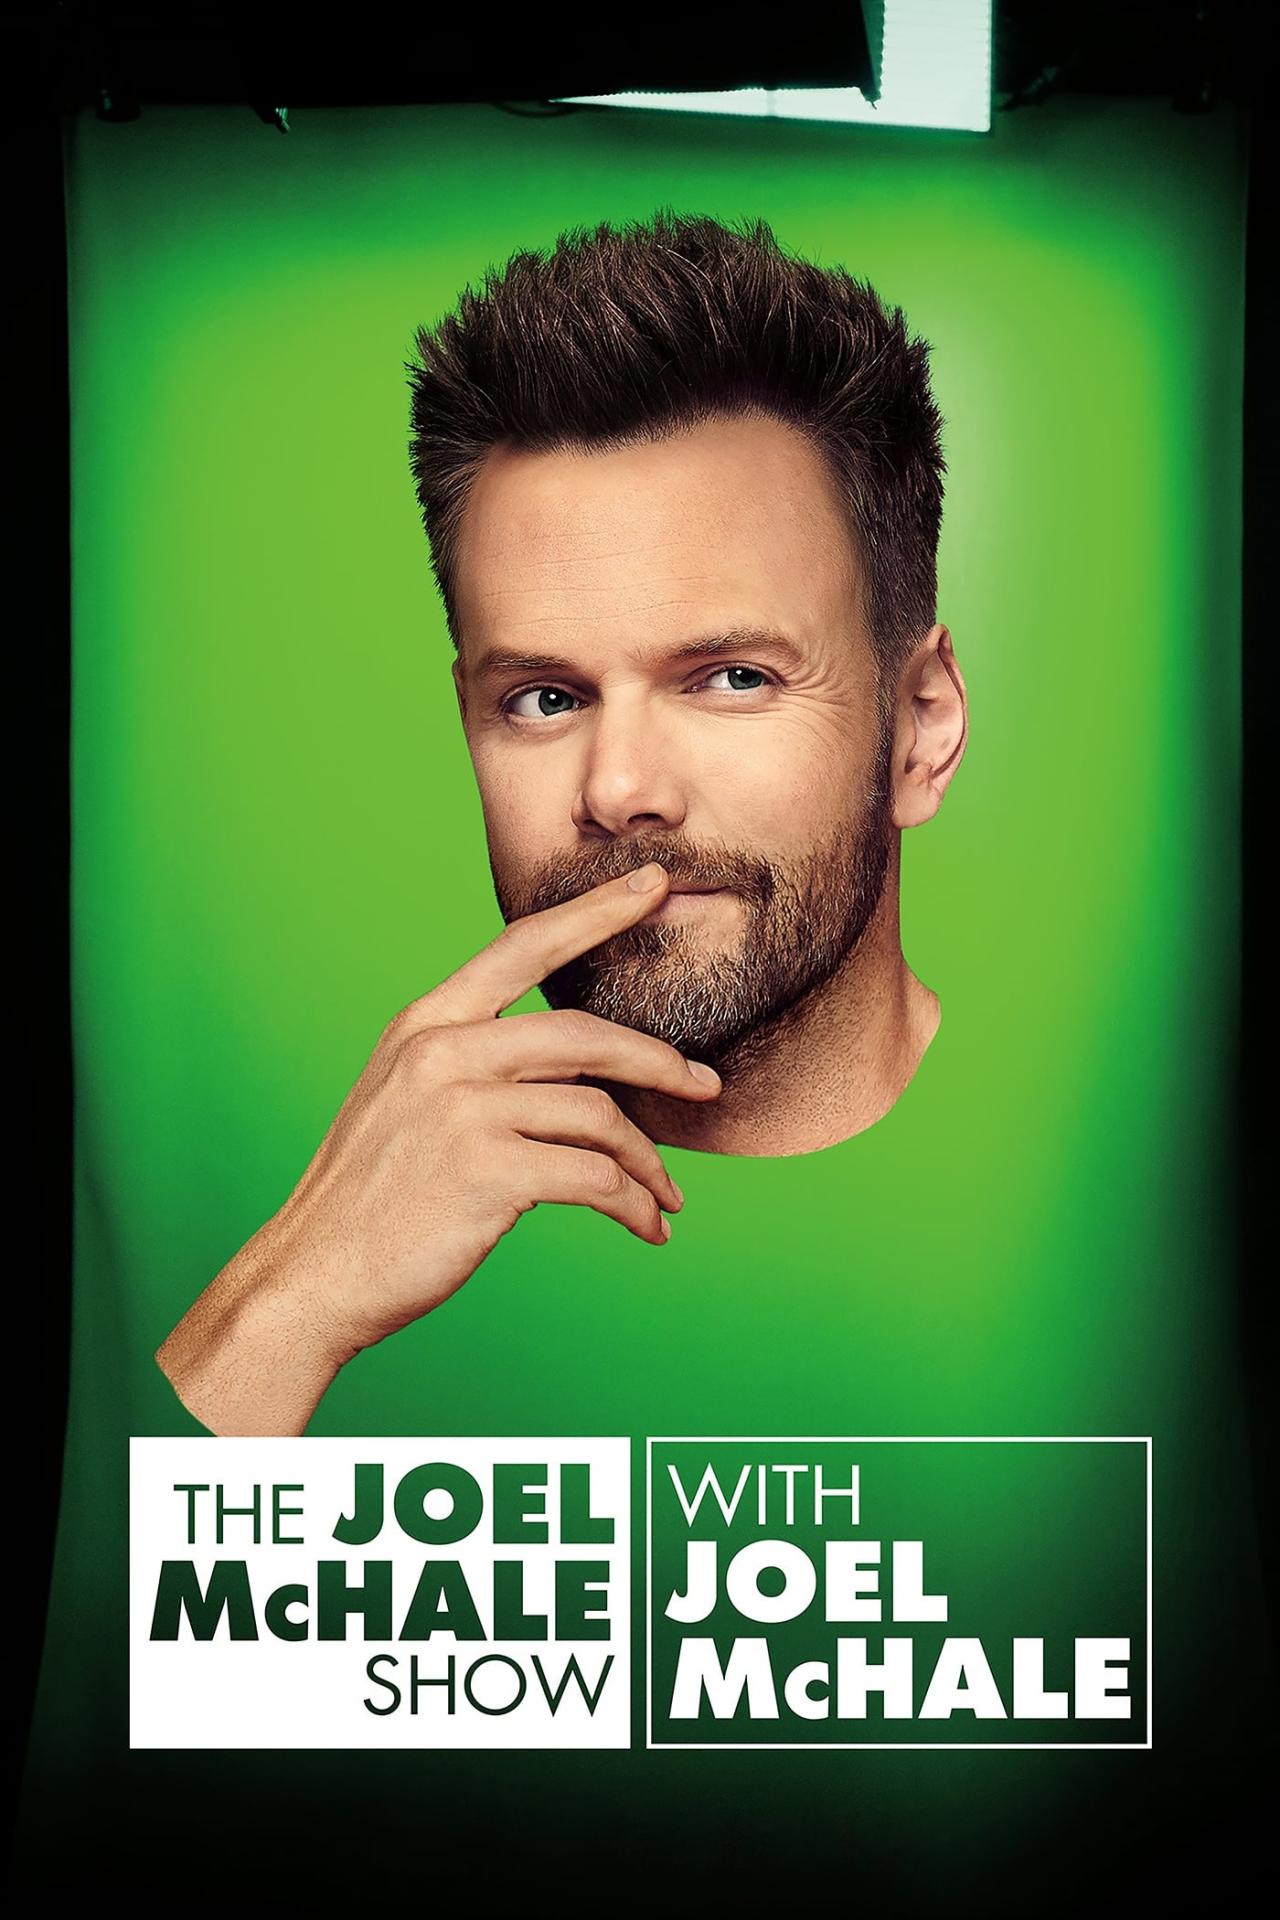 Affiche de la série The Joel McHale Show with Joel McHale poster